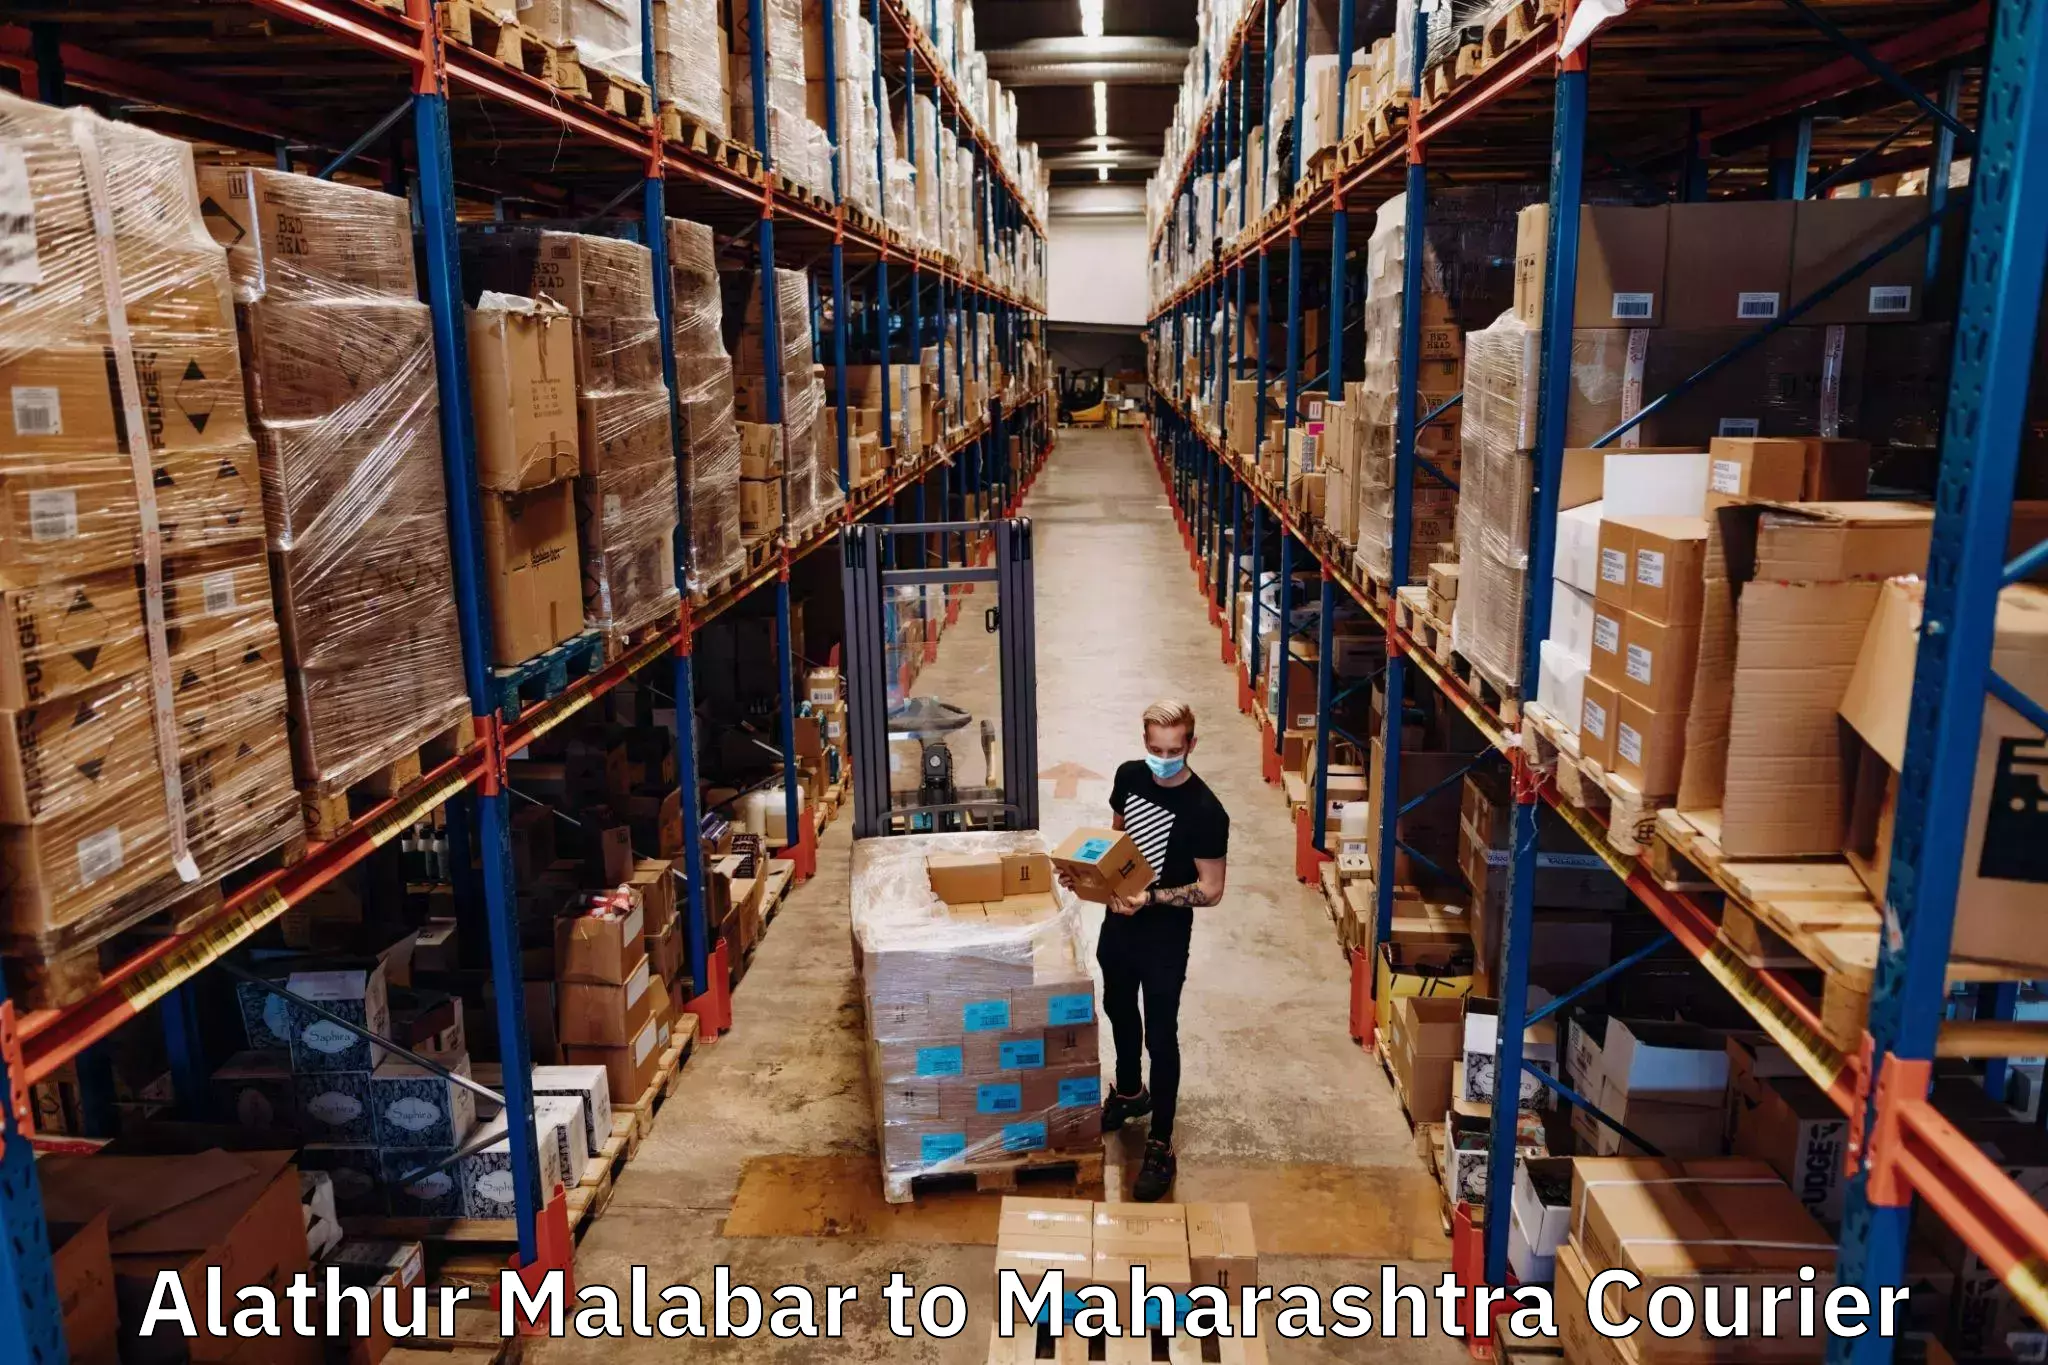 Seamless shipping service Alathur Malabar to Chamorshi